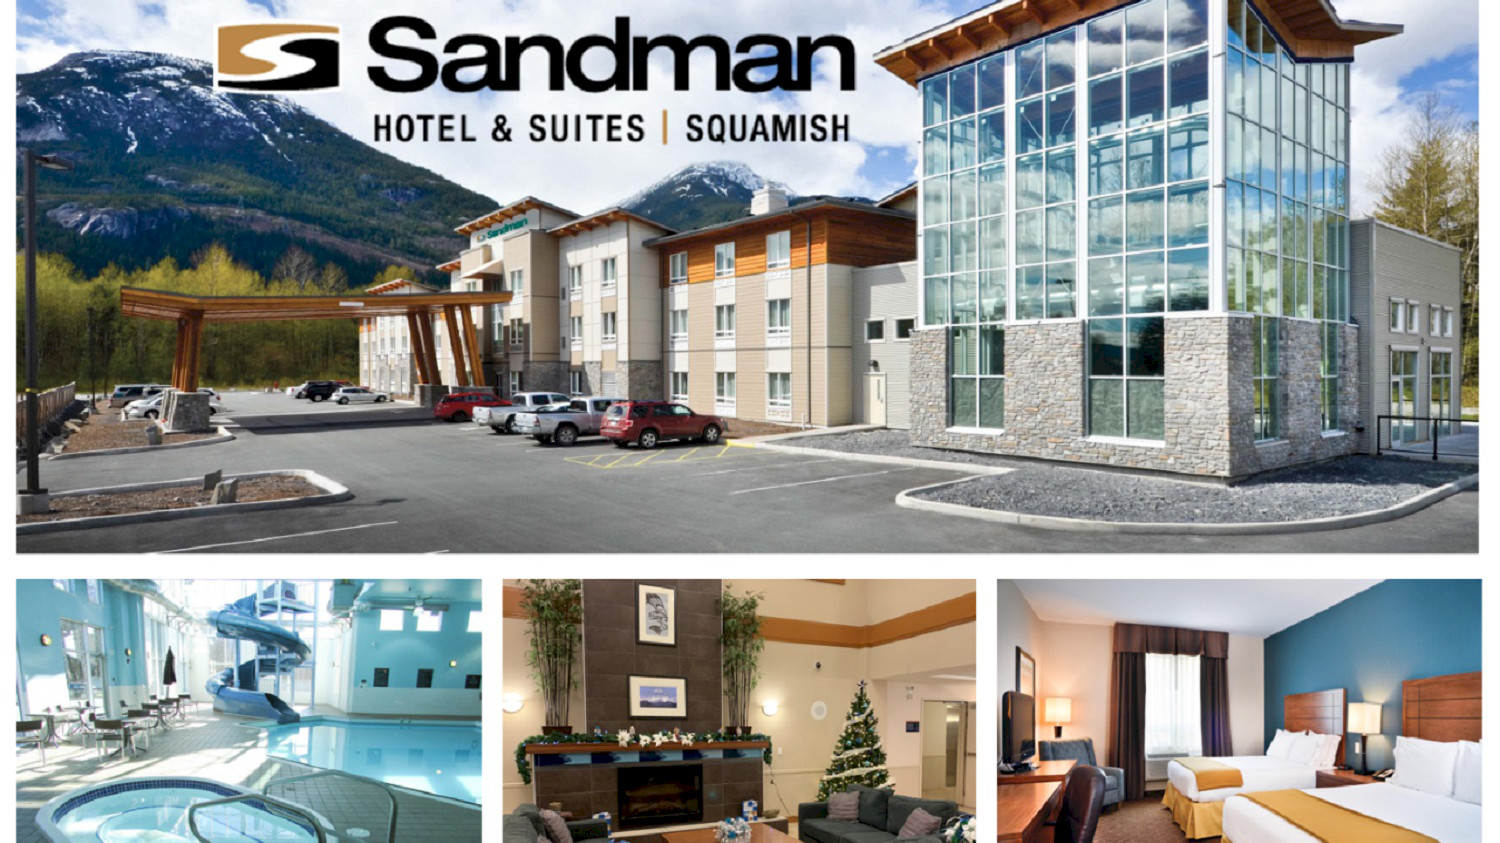 Sandman Hotel & Suites Slideshow Image